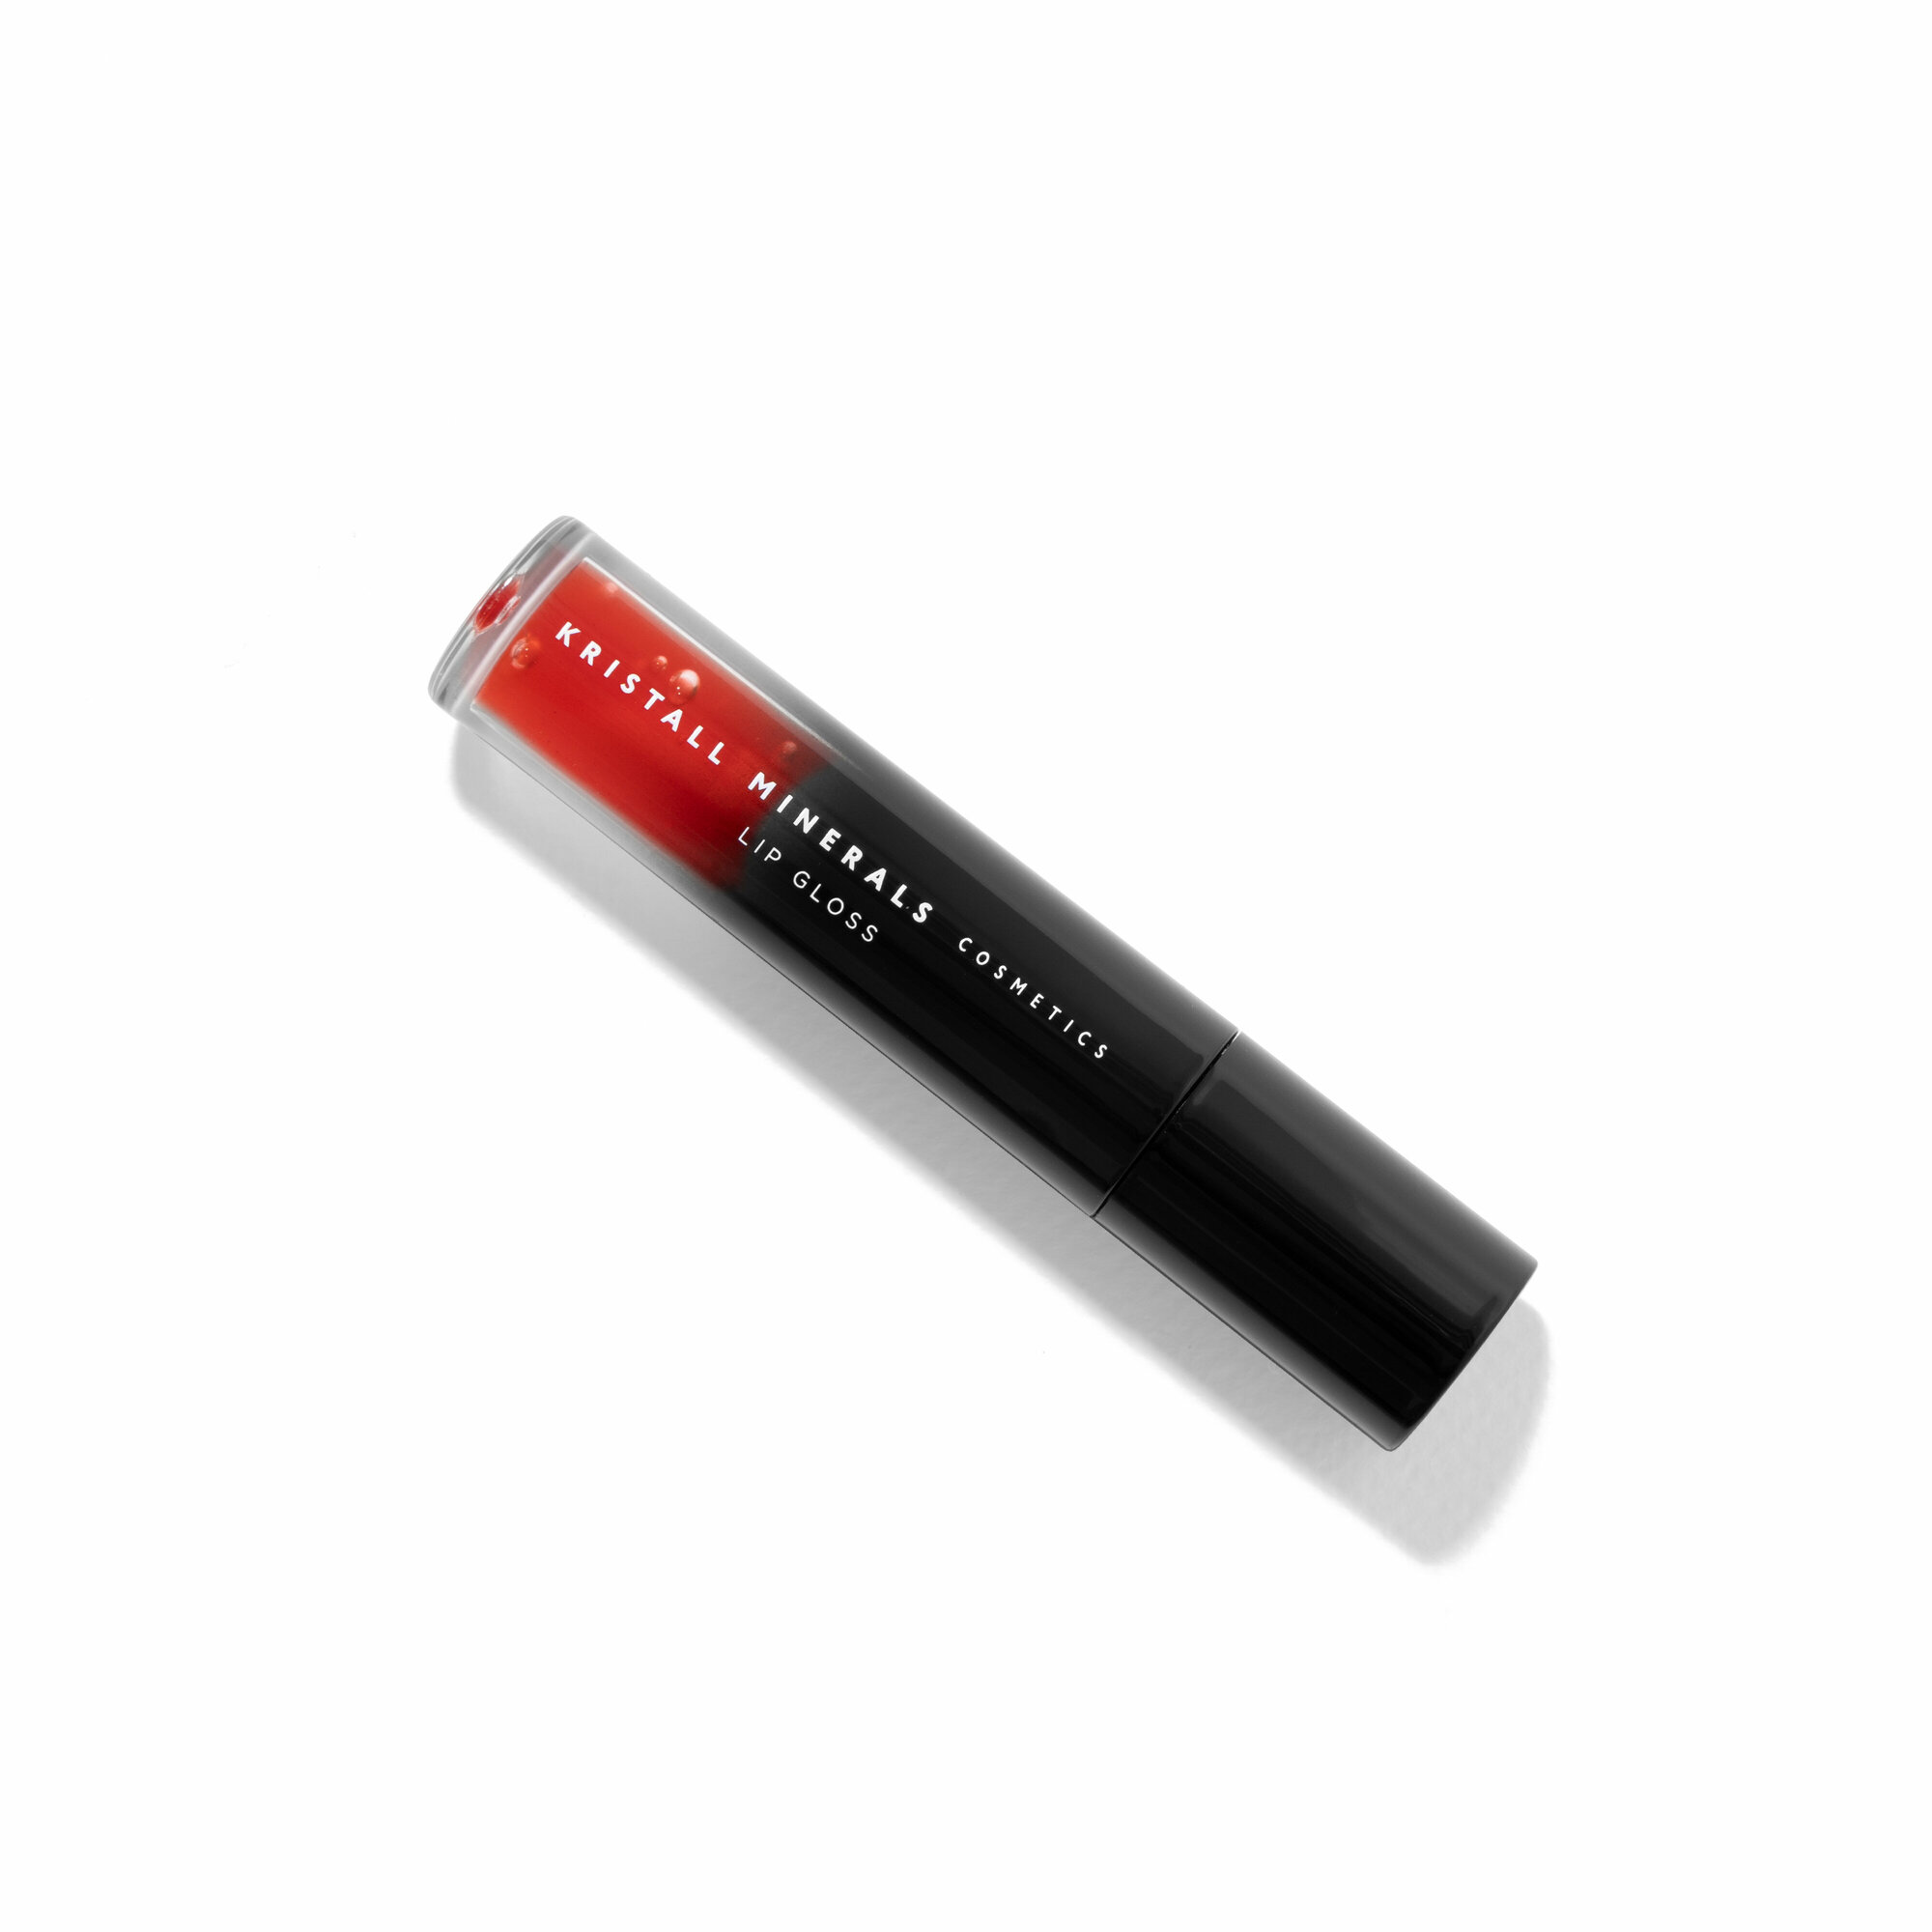 Kristall Minerals Strawberry Lip Tint - тонирующее масло для губ с красным оттенком